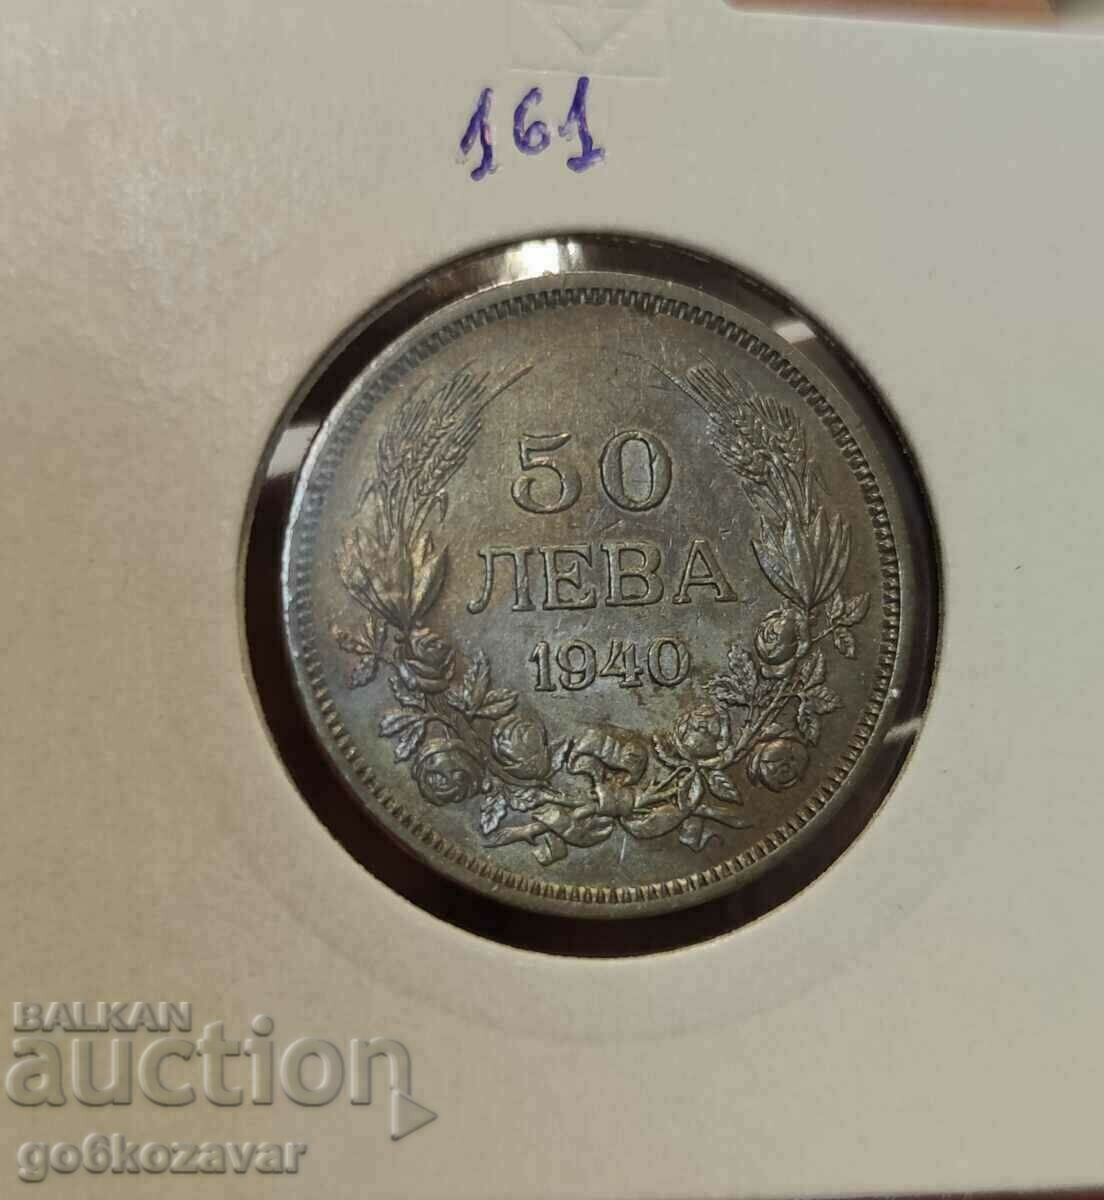 Bulgaria 50 BGN 1940 Monedă pentru colecție!